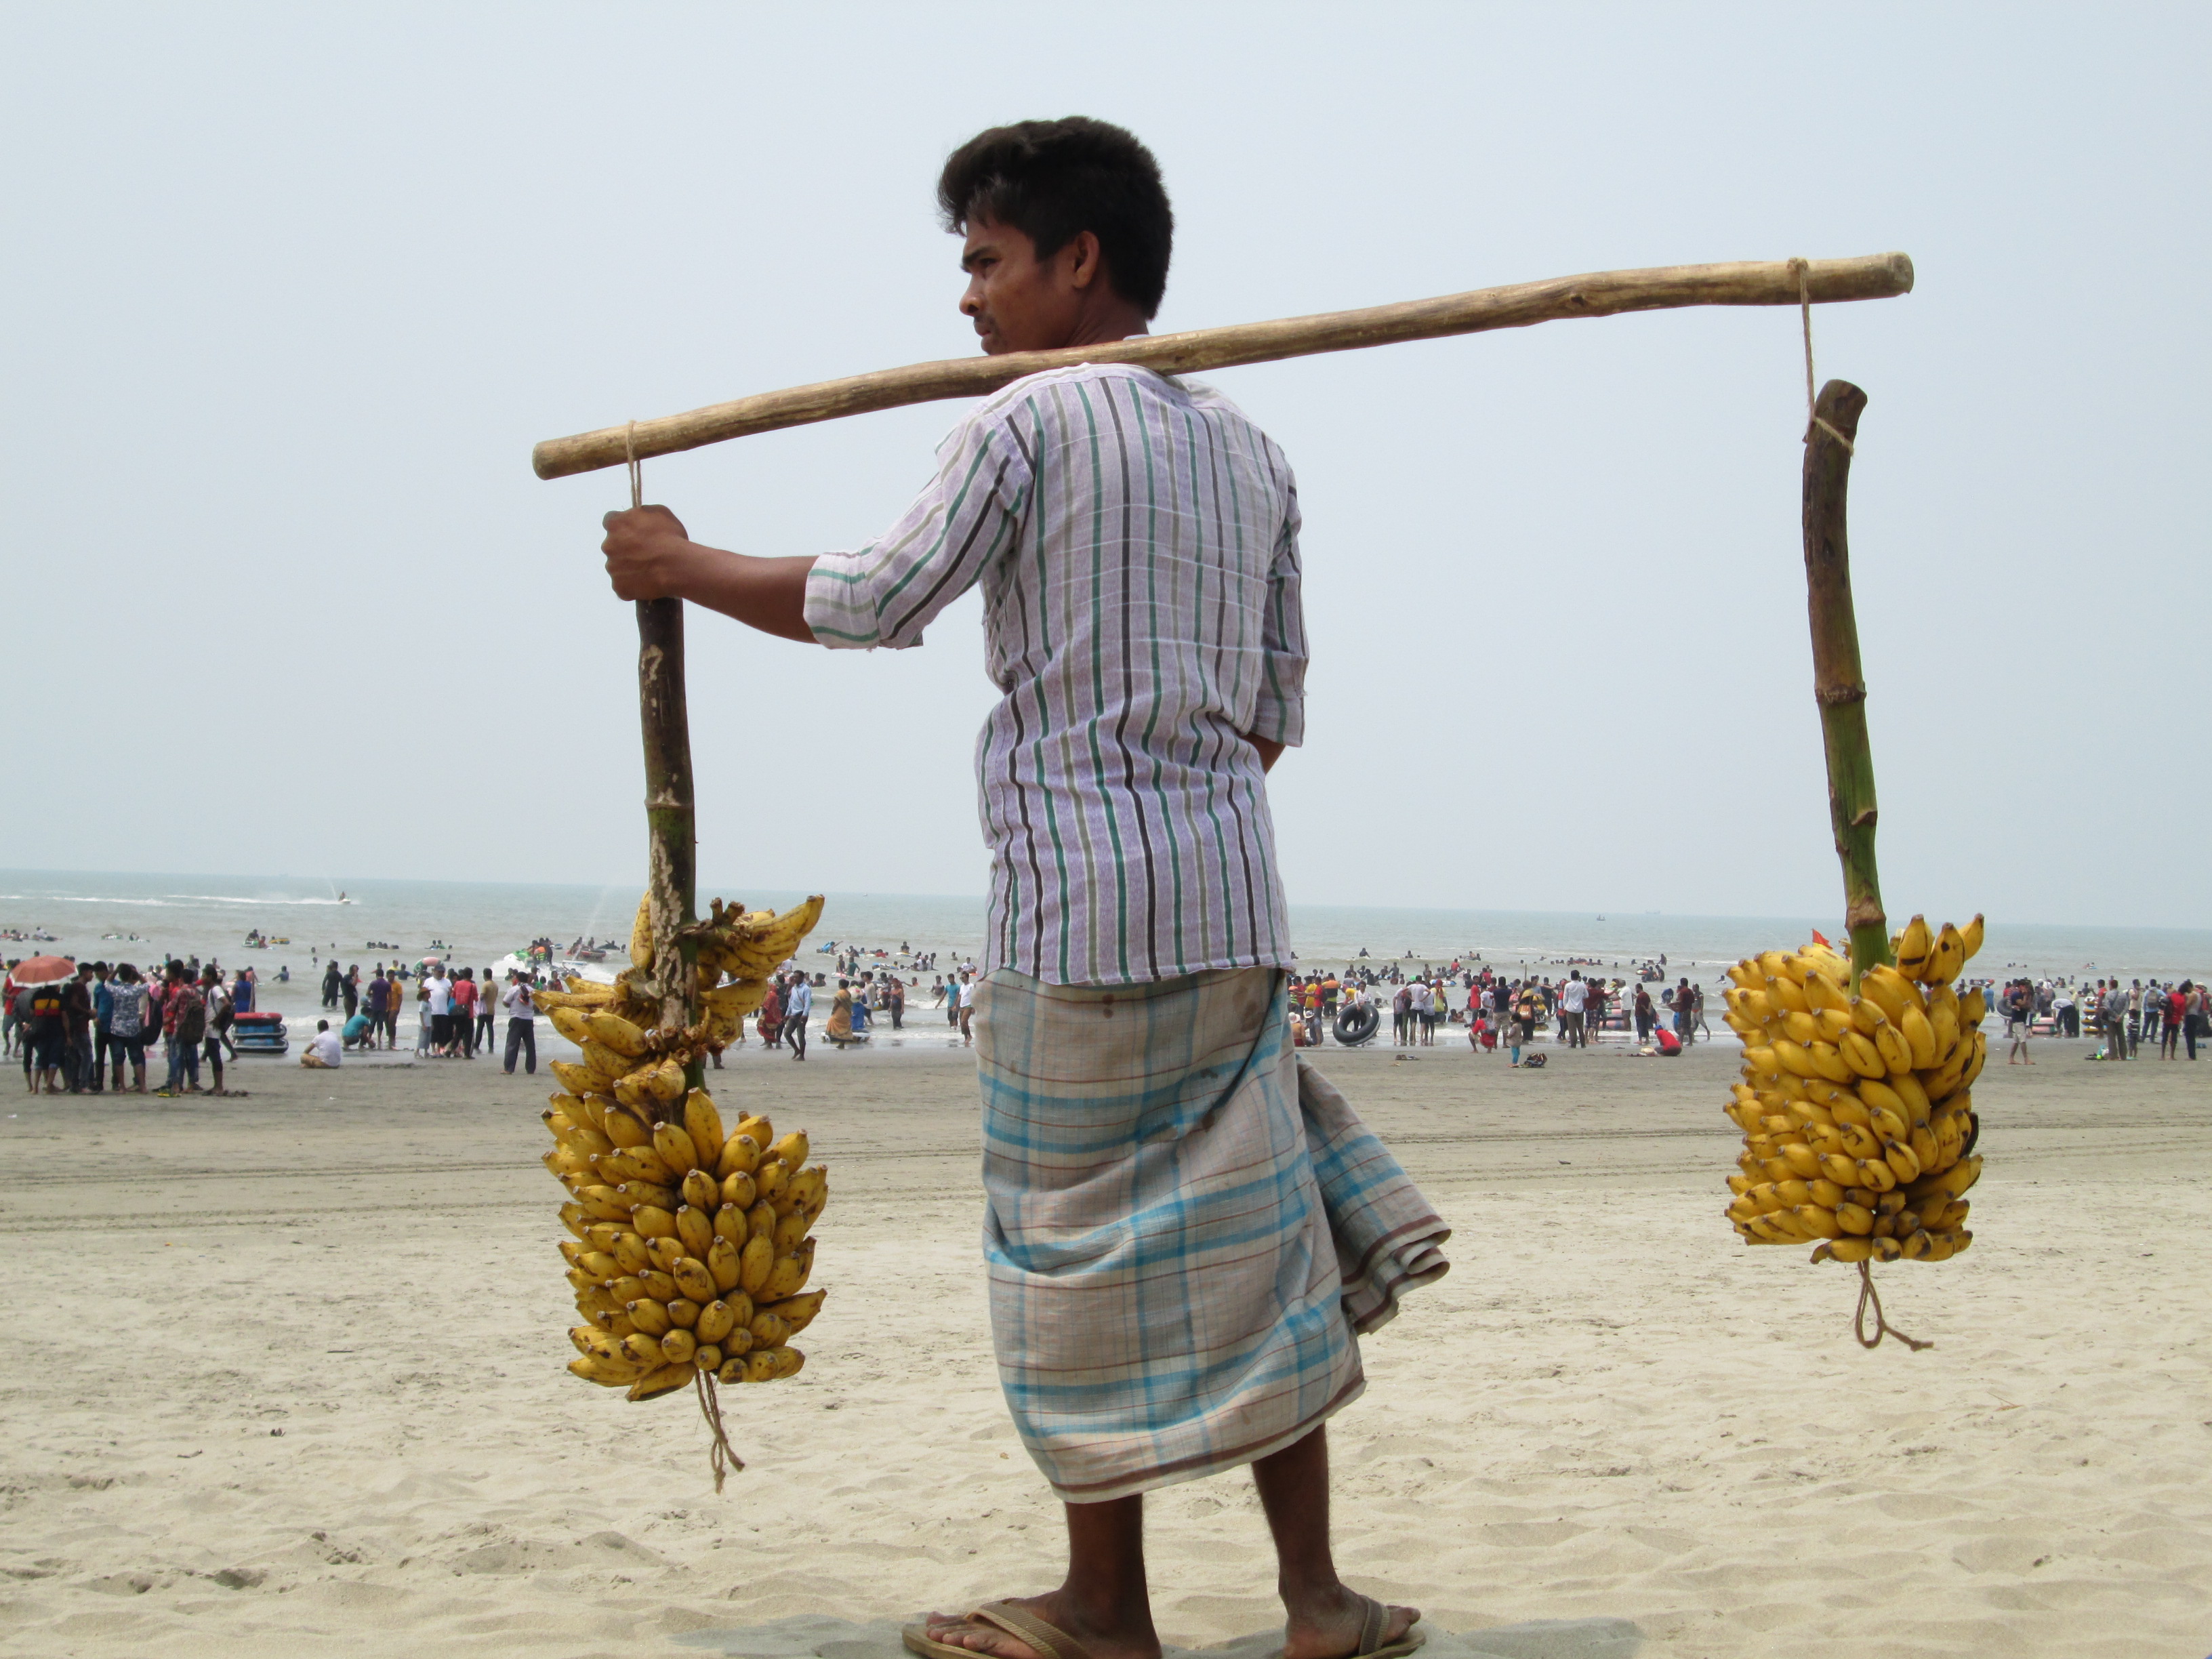 Praia de Cox's Bazar